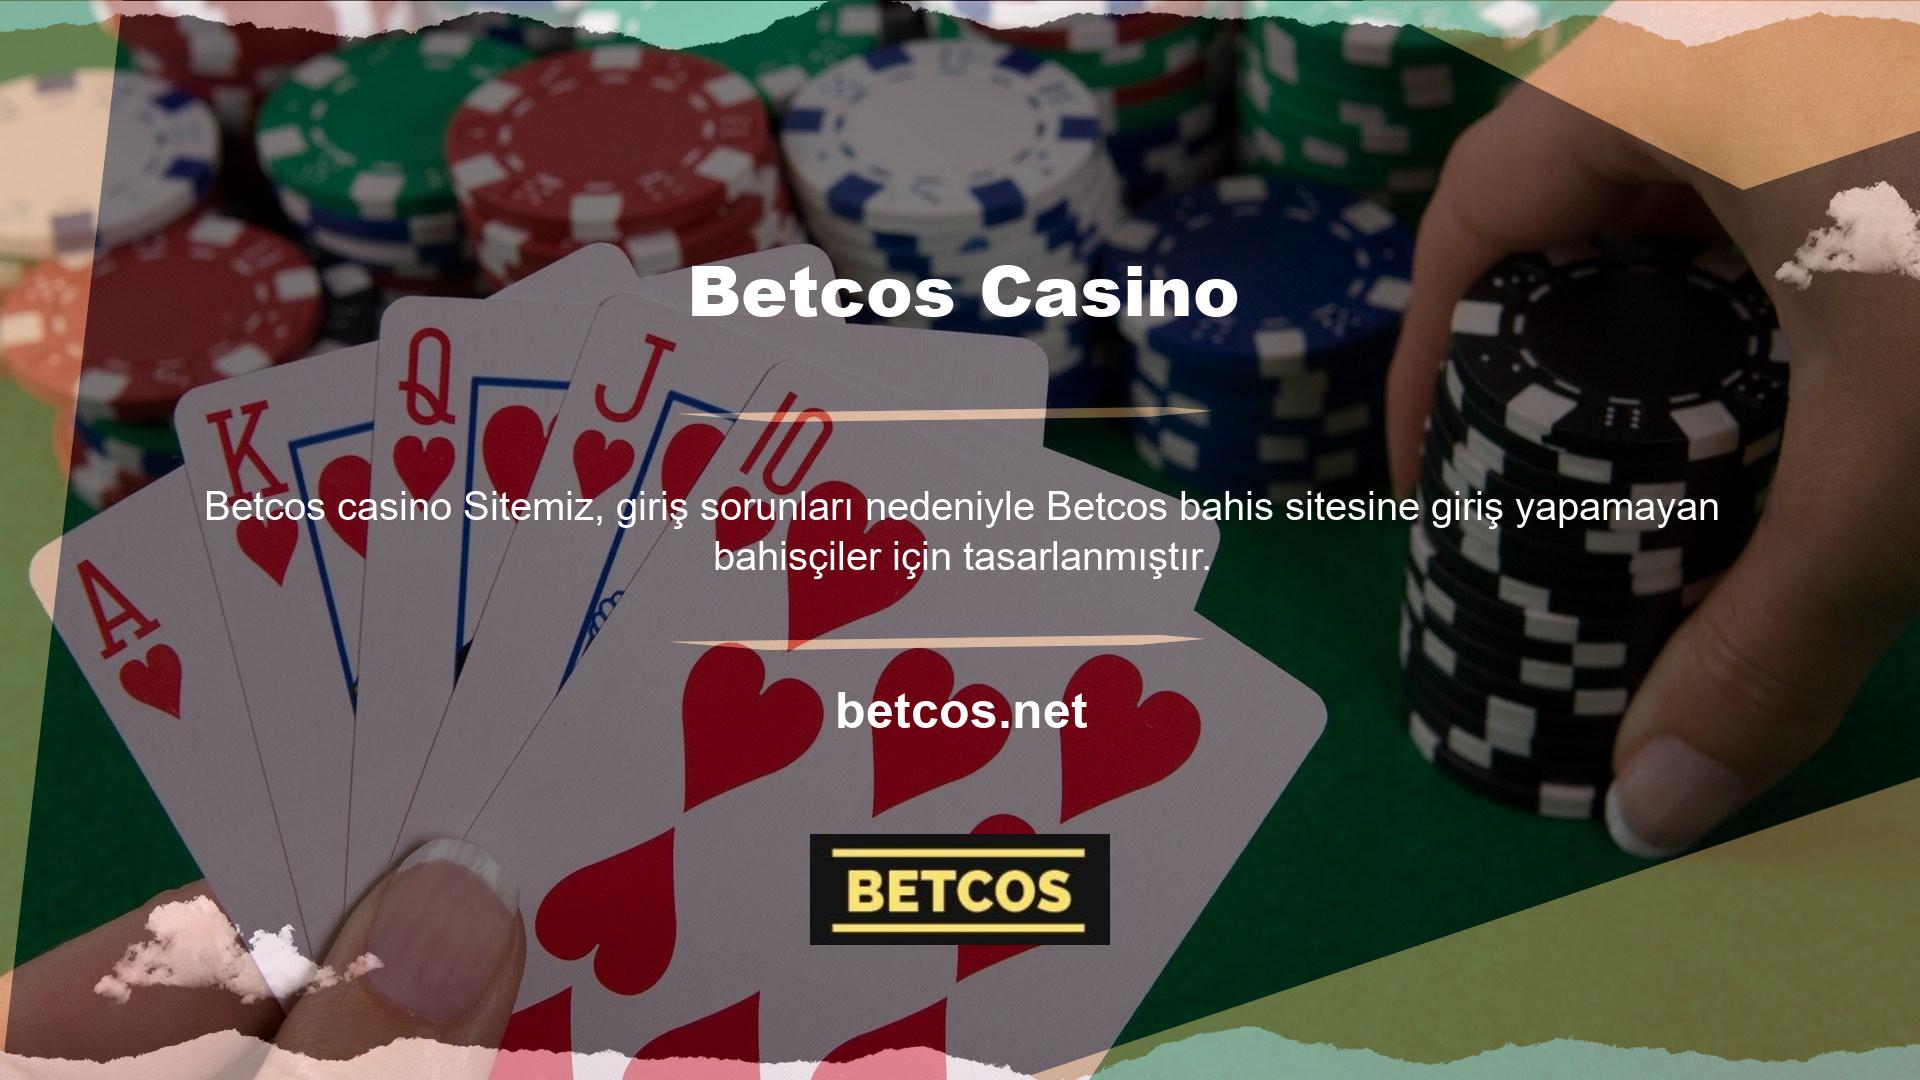 Betcos sitesine nasıl girileceği ve casino oyunlarının nasıl çalıştığı ile ilgili tüm bilgiler sayfamızda mevcuttur